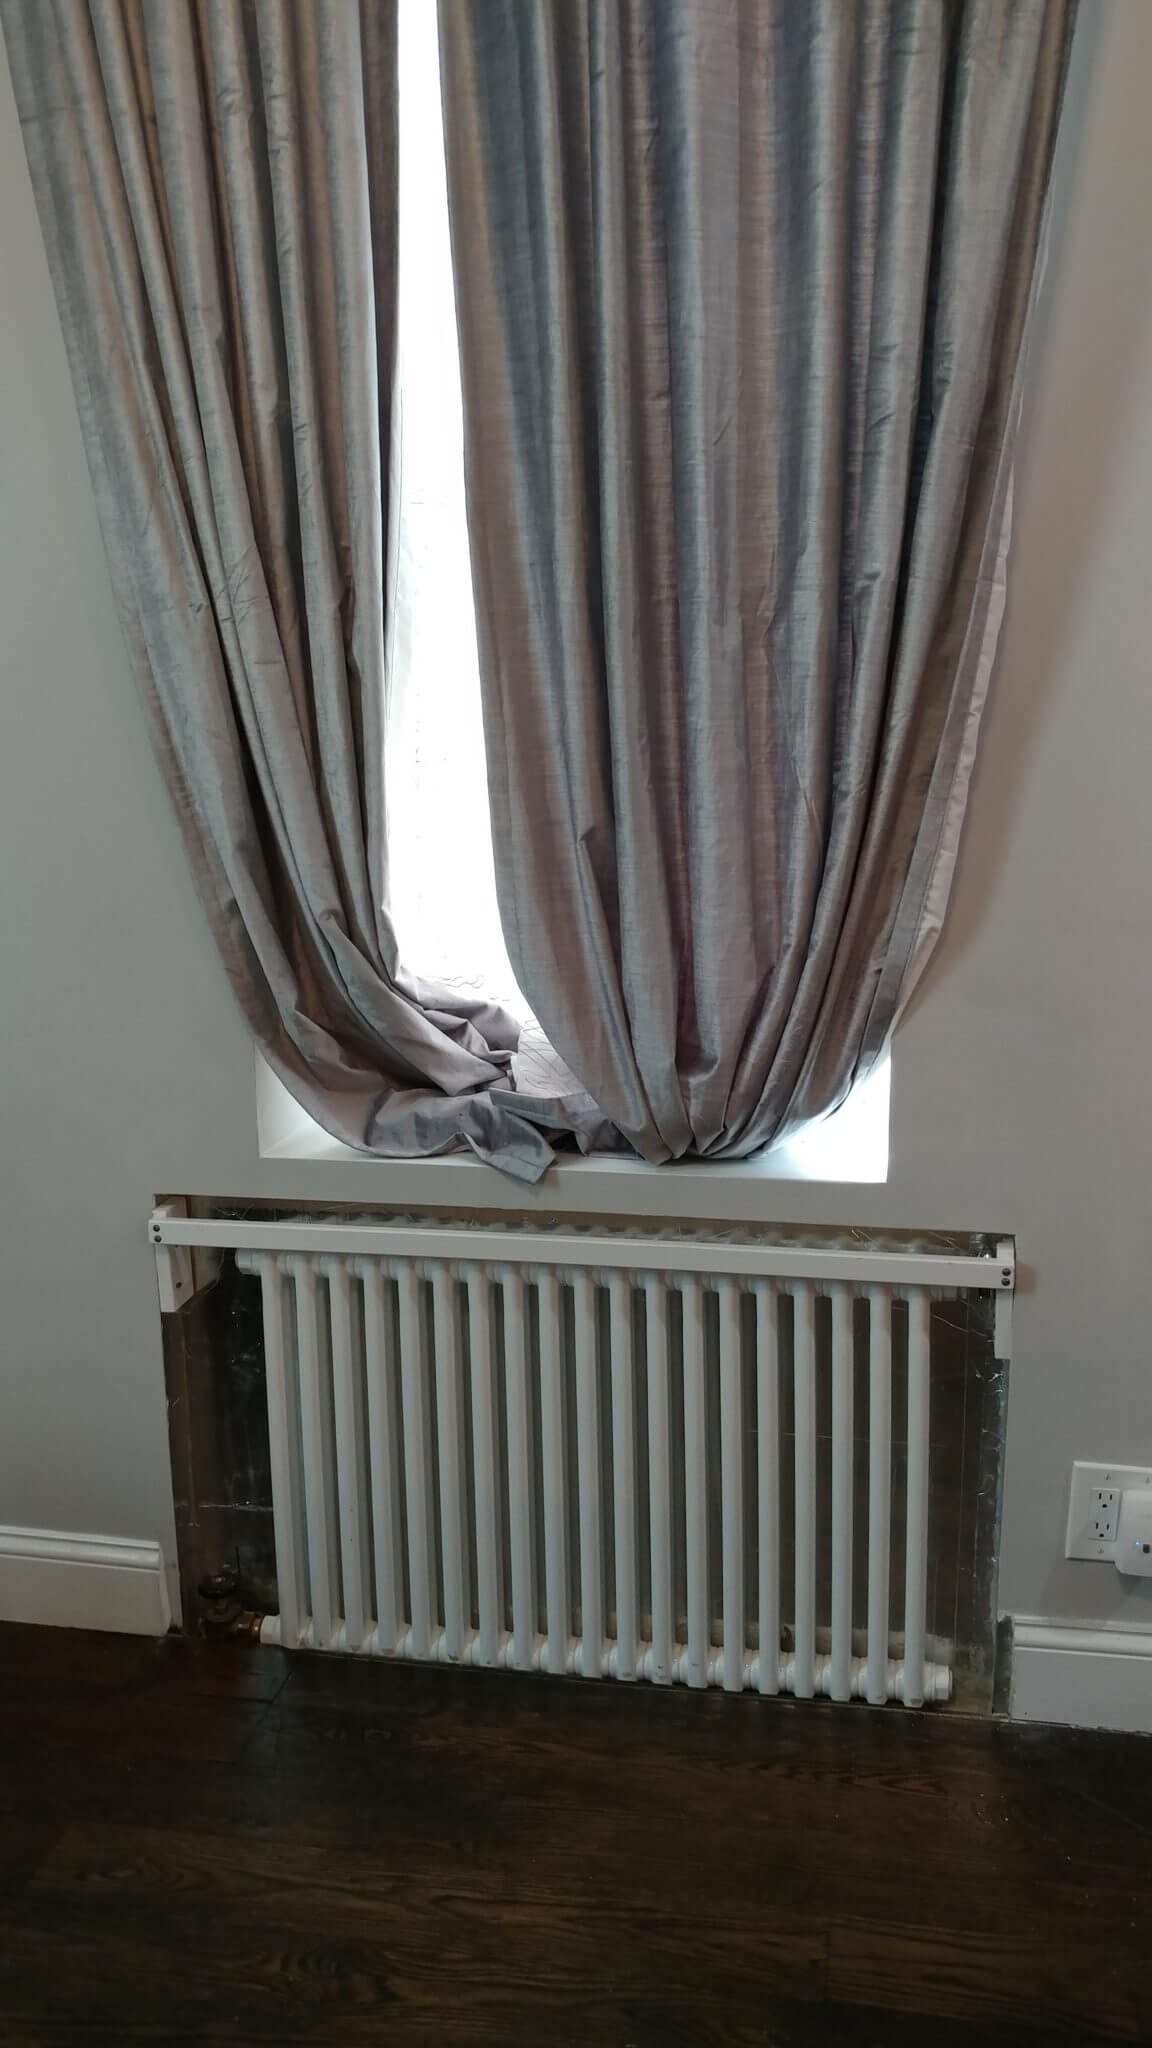 in-wall radiator under window